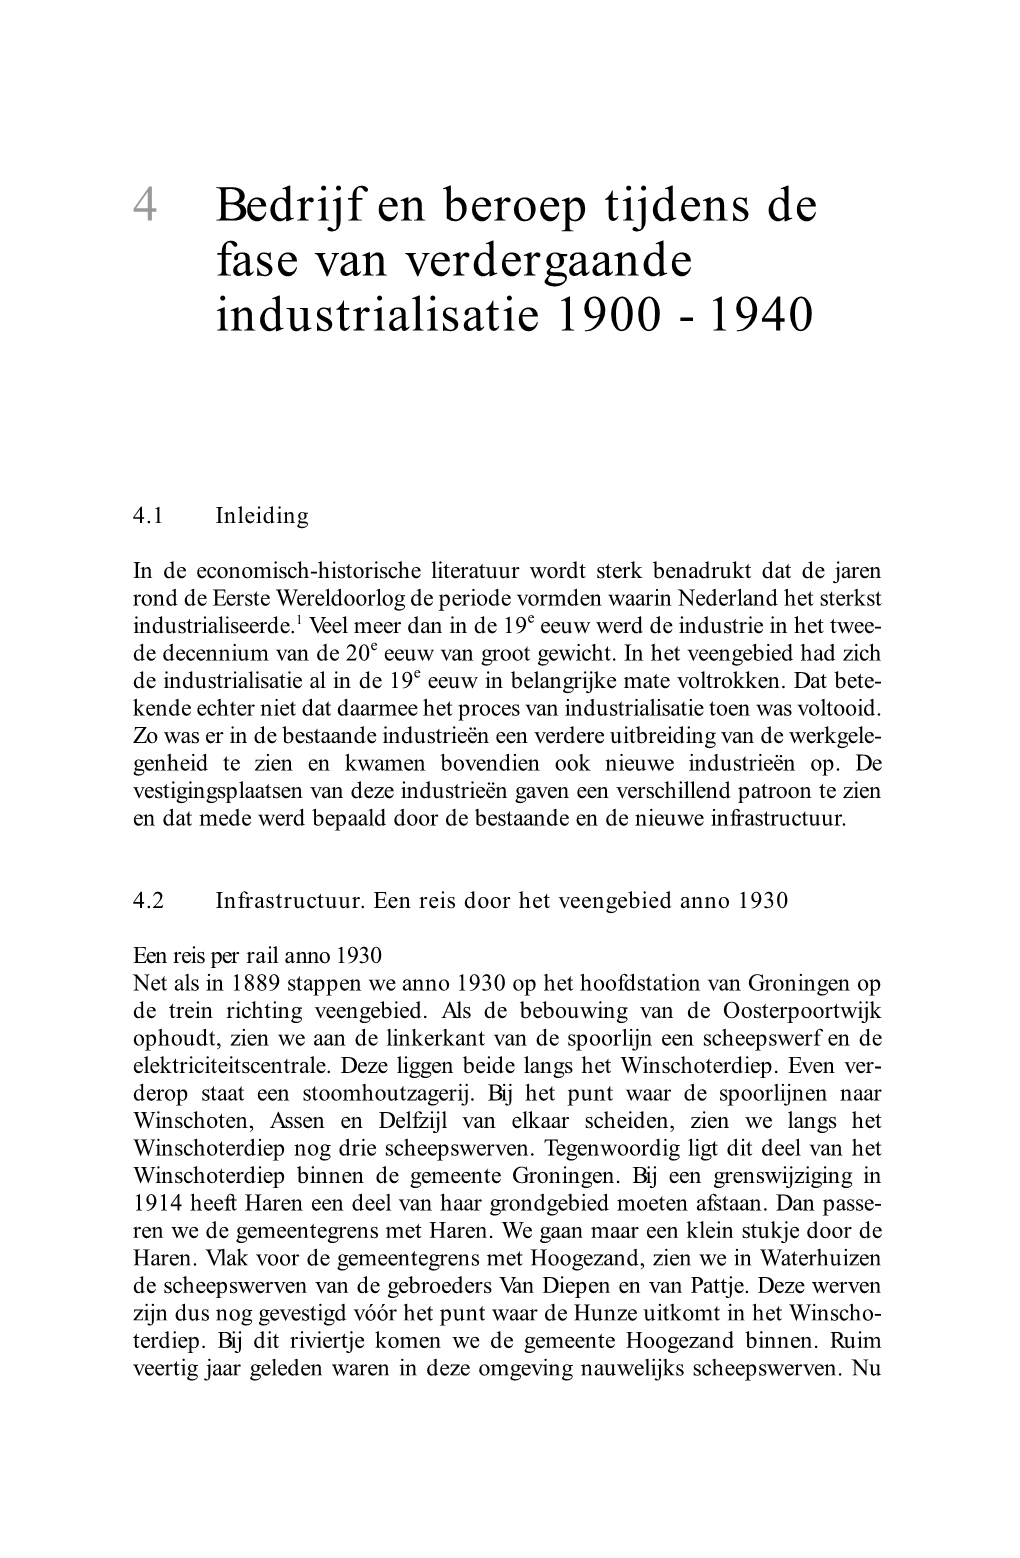 4 Bedrijf En Beroep Tijdens De Fase Van Verdergaande Industrialisatie 1900 - 1940